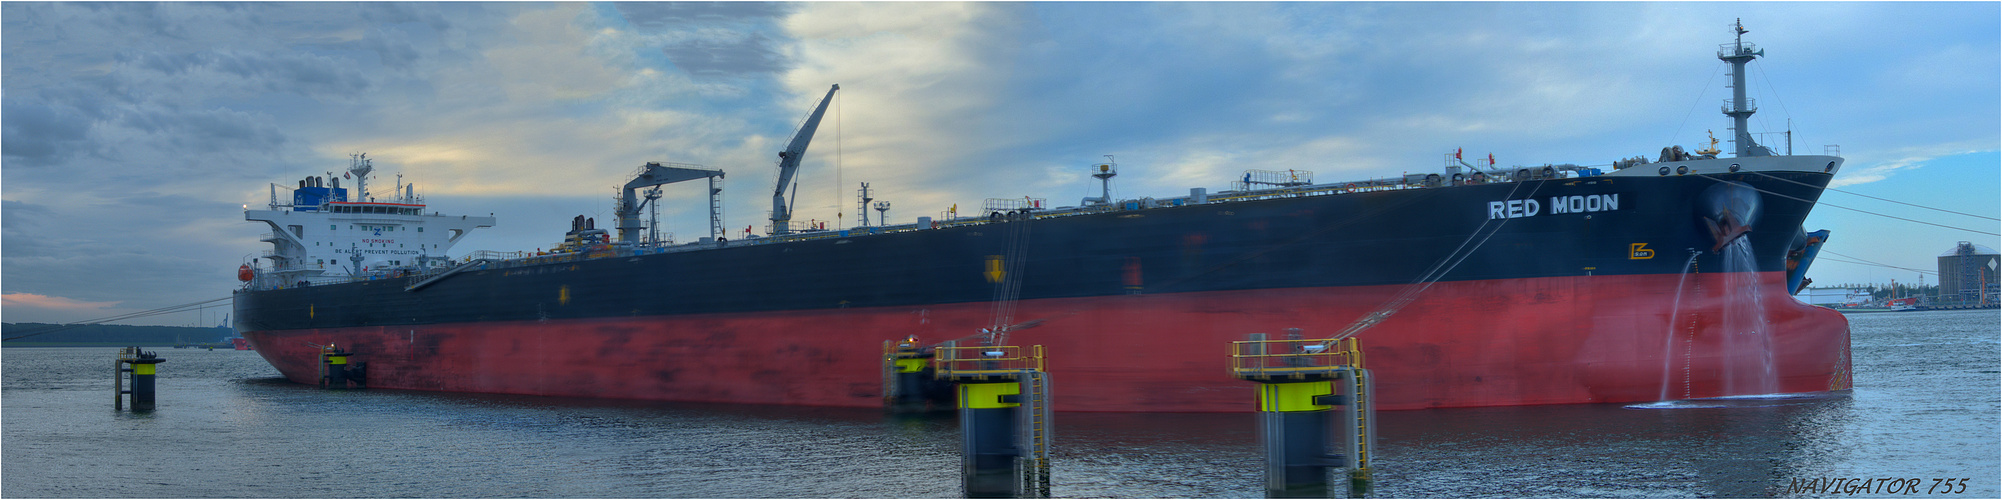 RED MOON, /Crude Oil Tanker. Calandkanal Rotterdam.  Bitte scrollen!